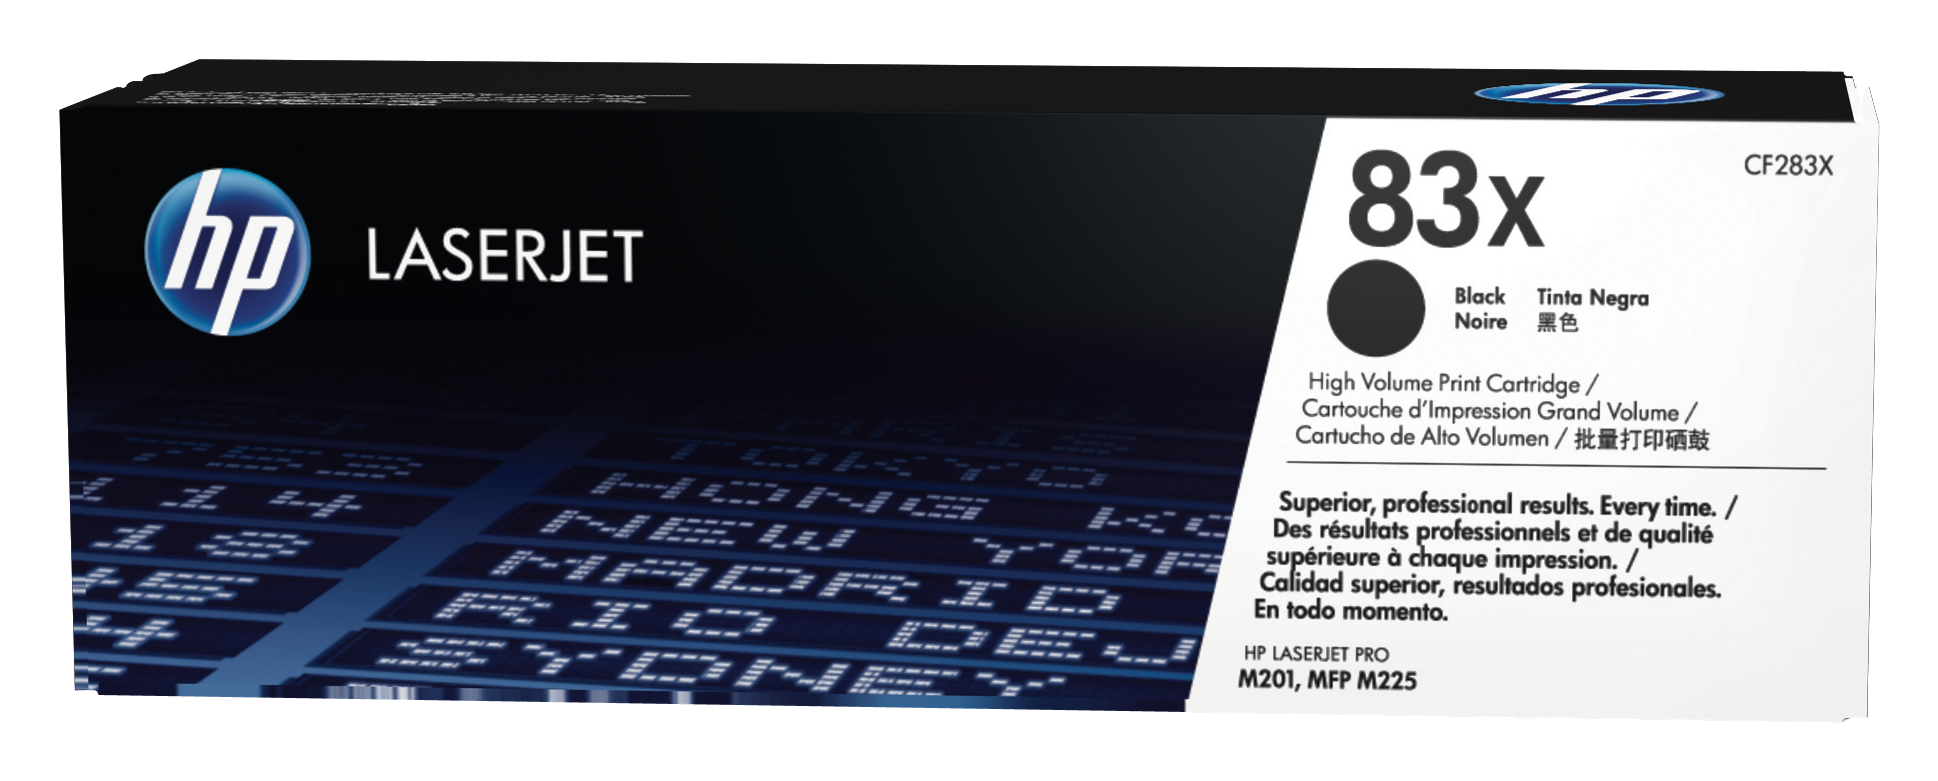 Картридж для печати HP Картридж HP 83X CF283X вид печати лазерный, цвет Черный, емкость